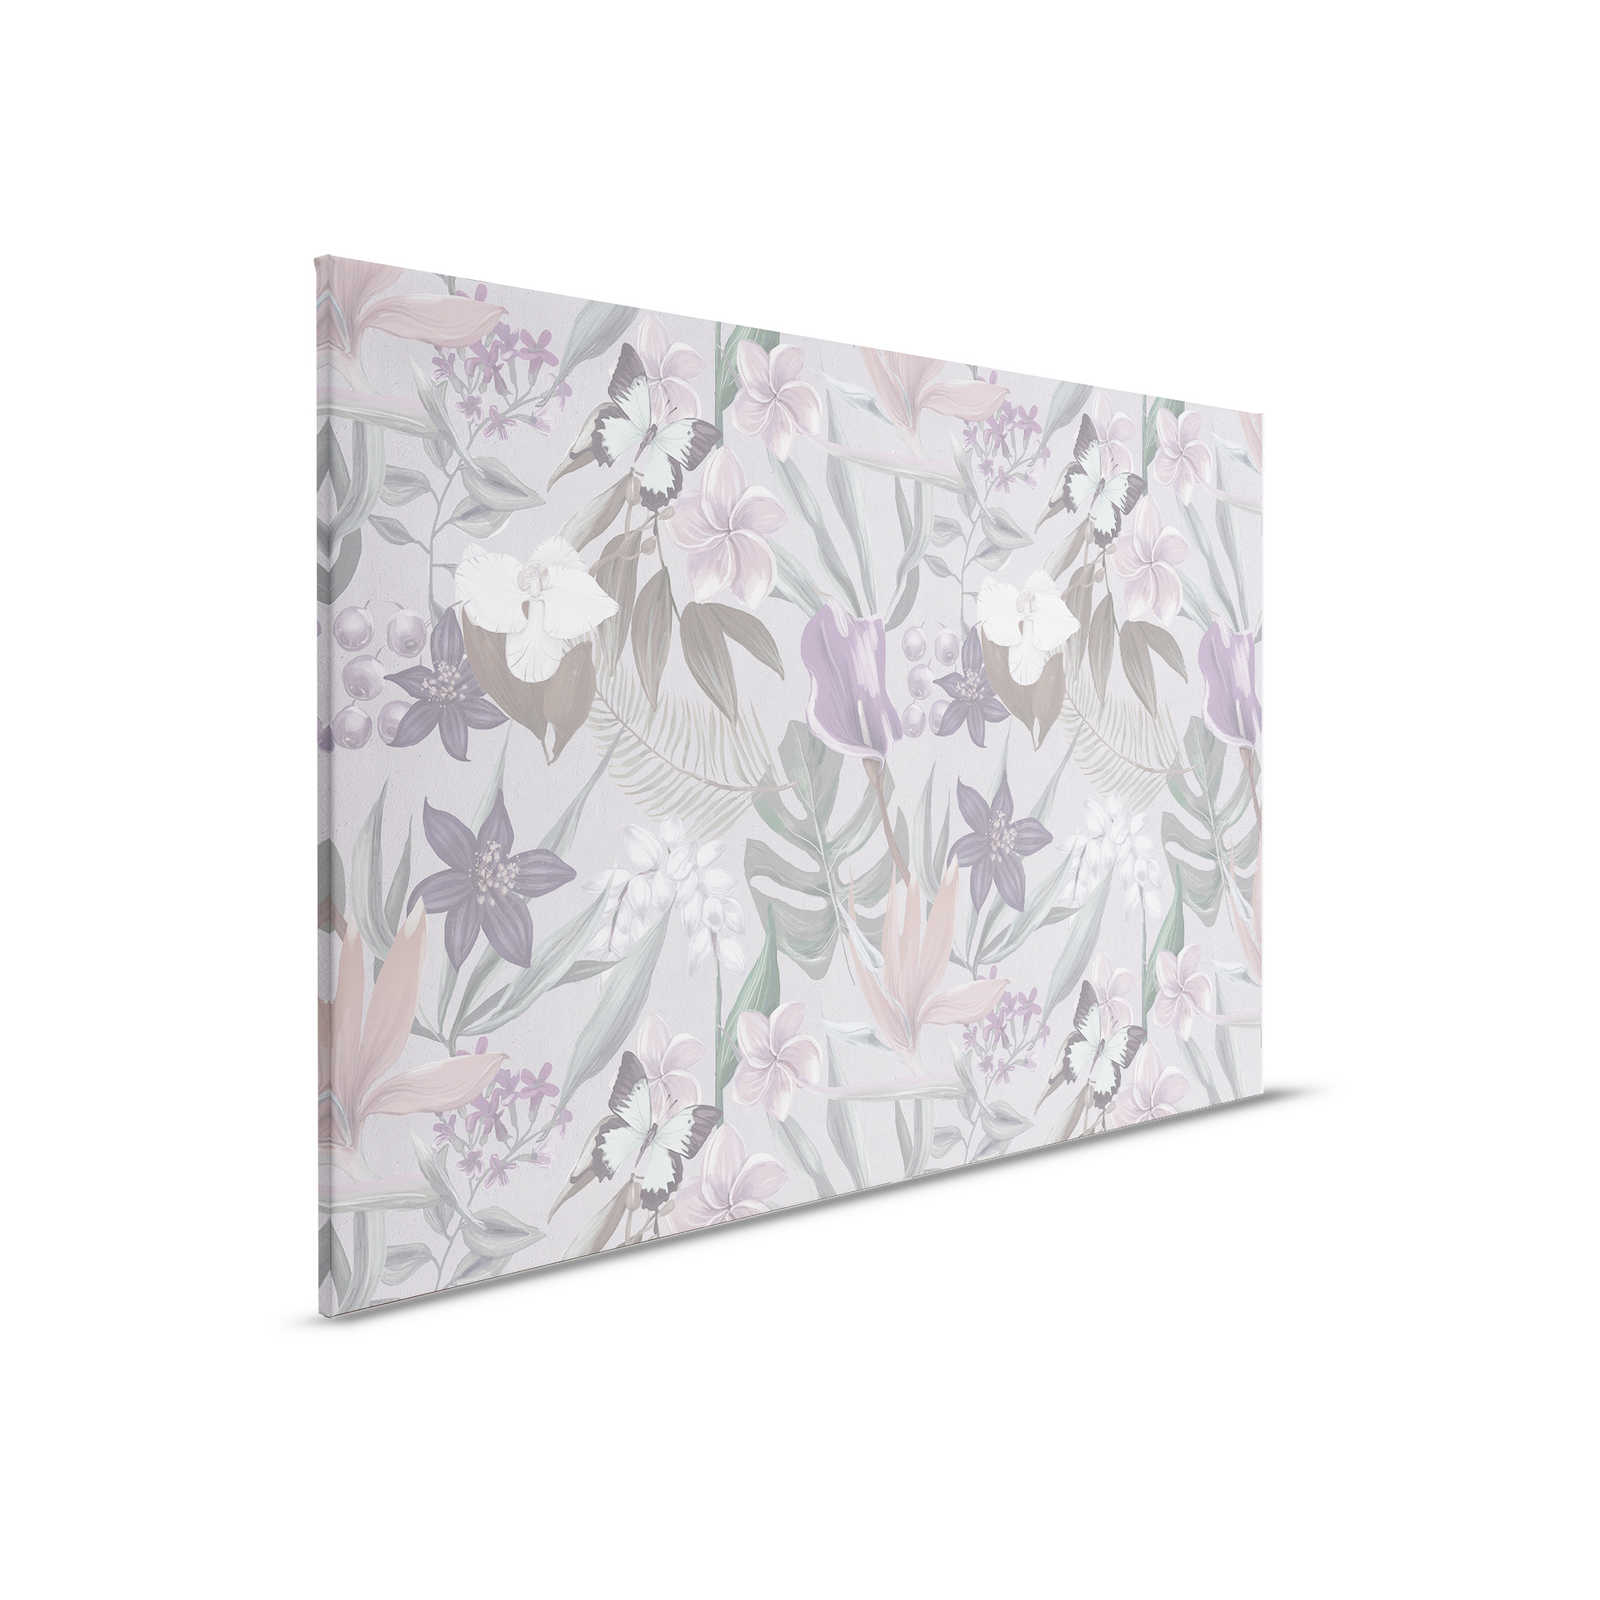 Floral Jungle Canvas Schilderij getekend | roze, wit - 0.90 m x 0.60 m
